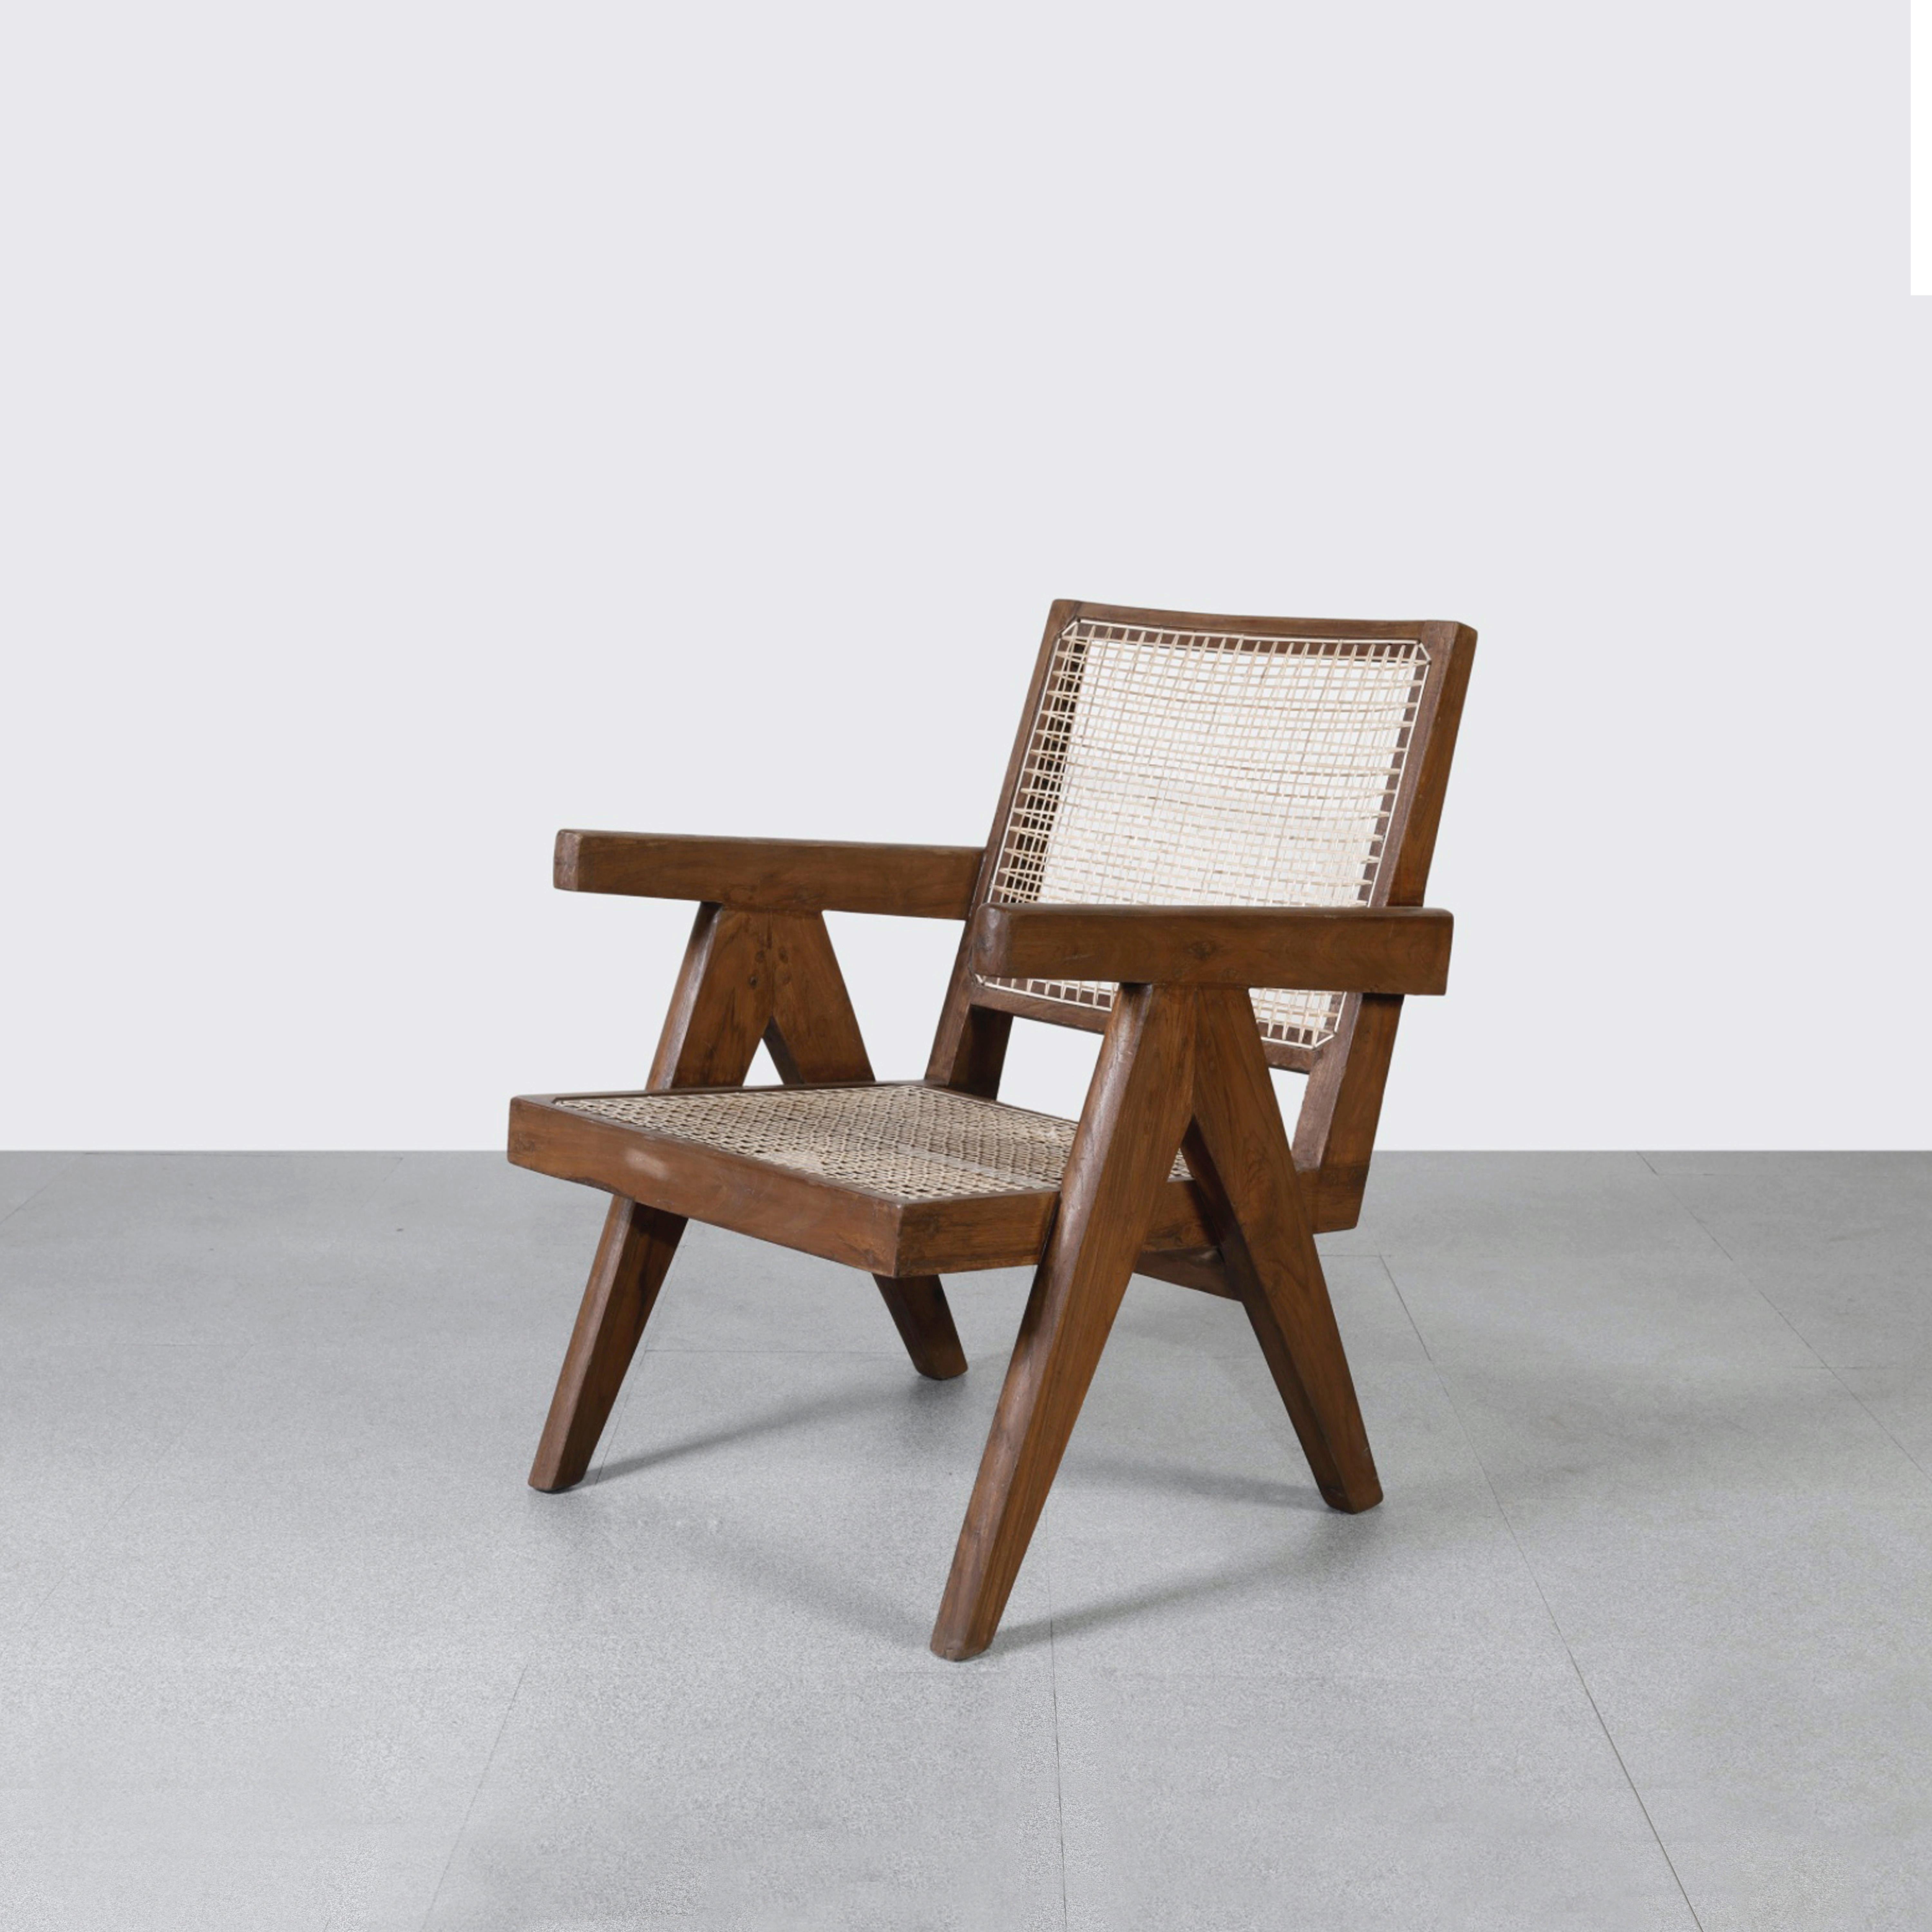 Dieser Stuhl ist nicht nur ein fantastisches Stück, er ist auch ein Design-Statement. Schließlich handelt es sich um einen der berühmtesten Sessel aus Chandigarh. Es ist roh, einfach und poetisch und drückt eine wunderbare Nonchalance aus. Seine